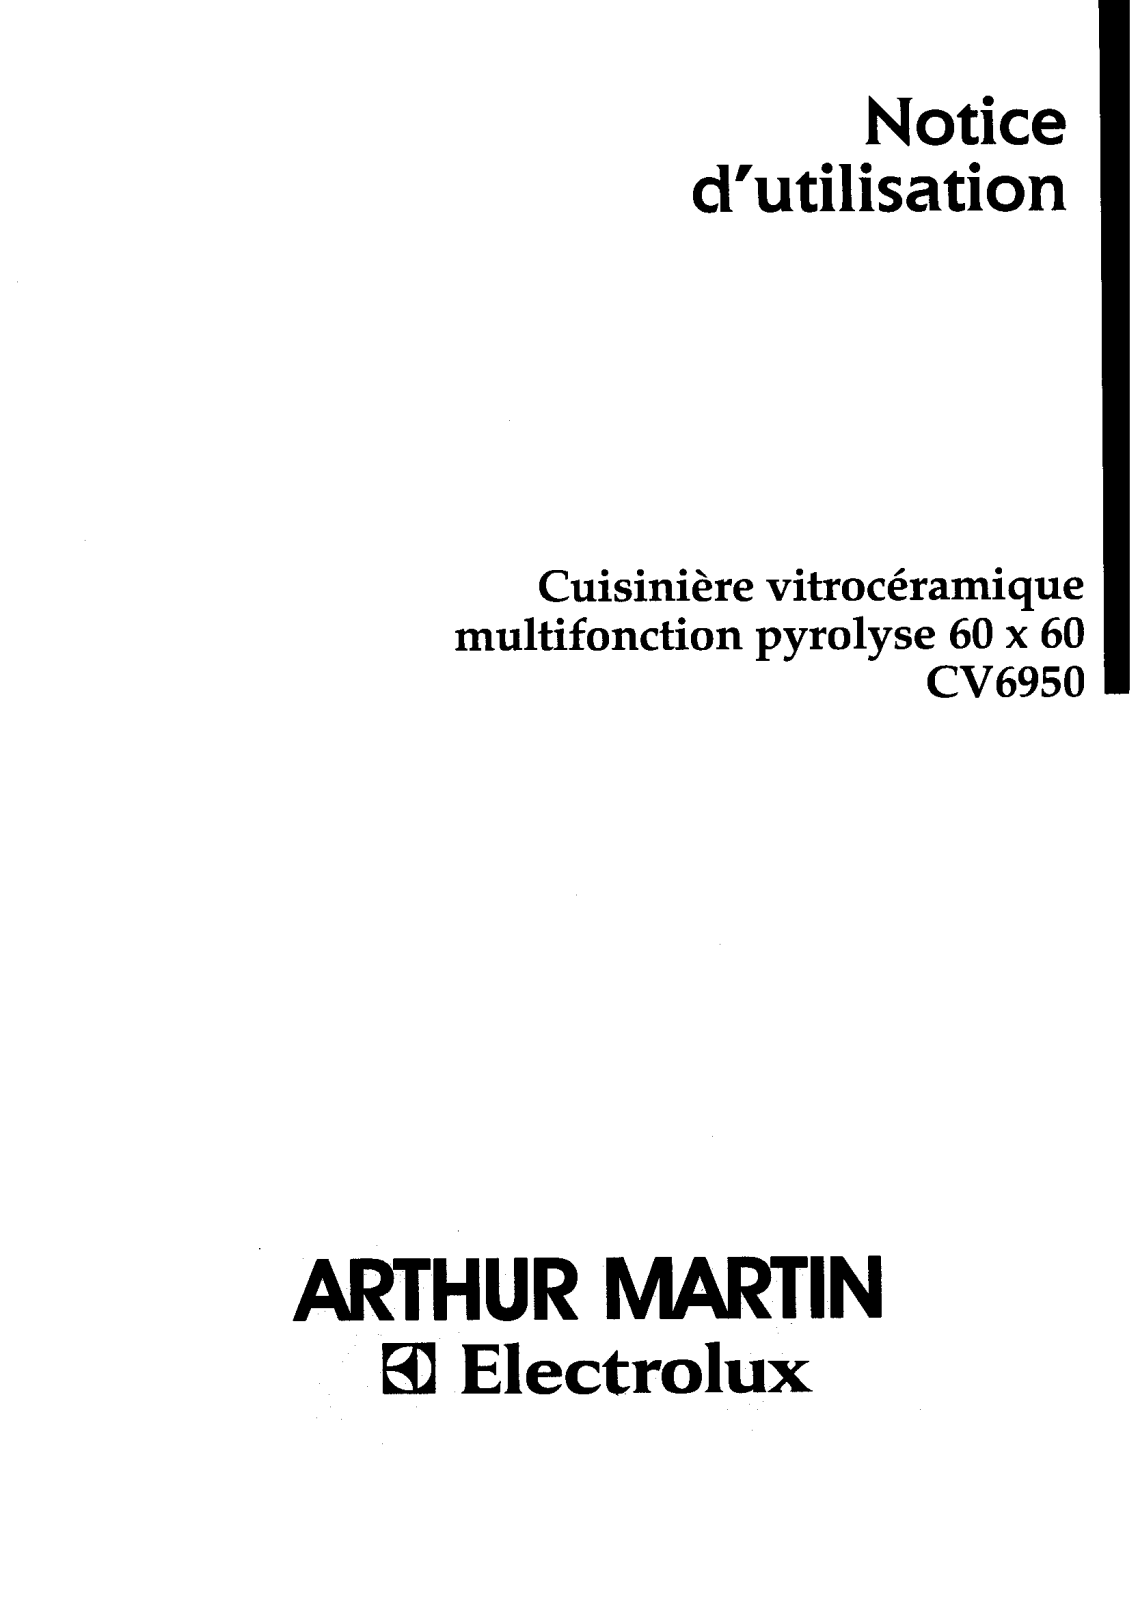 Arthur martin CV6950 User Manual